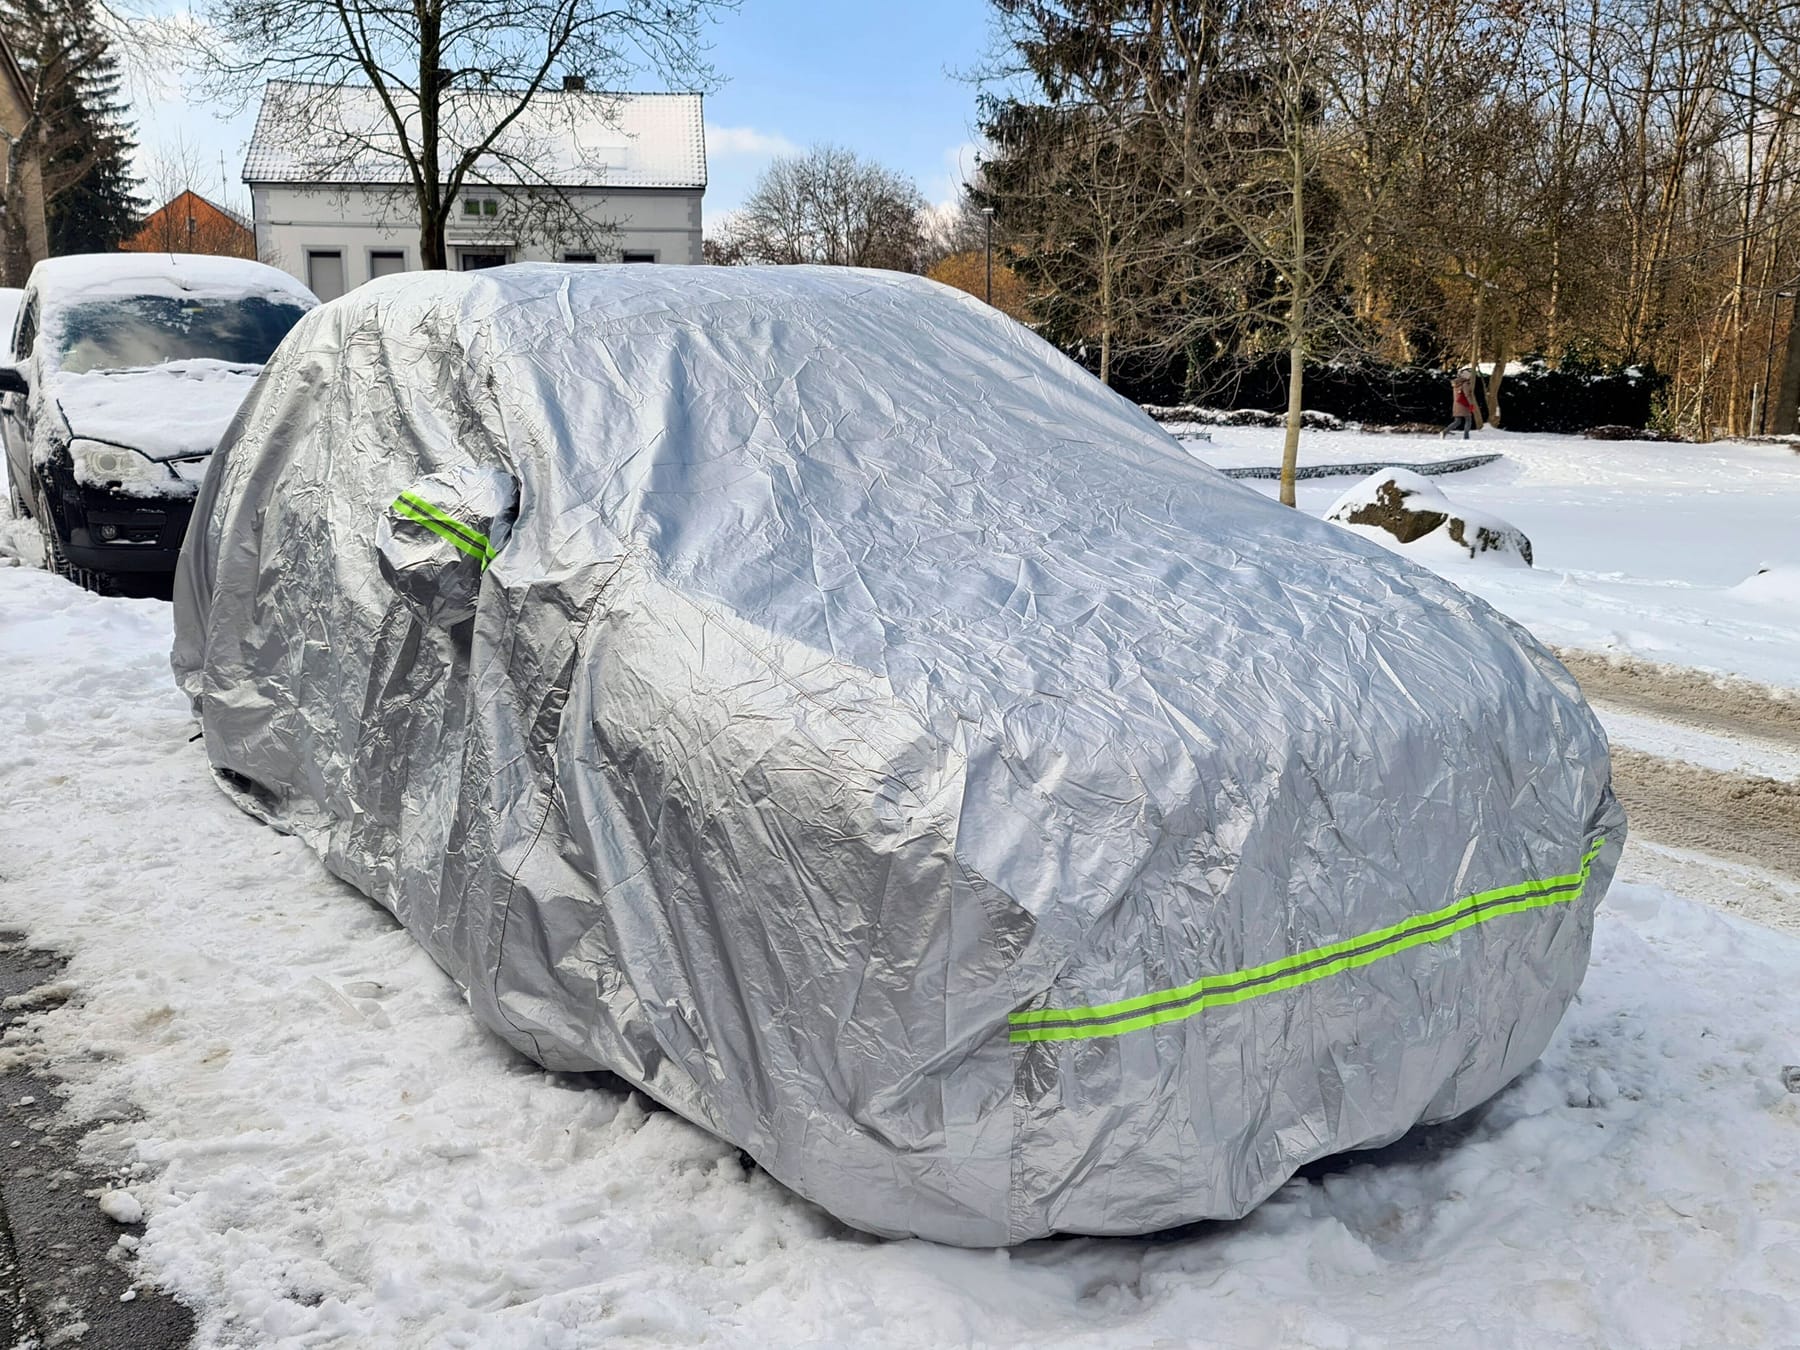 Parken im Winter: Pkw-Schutz und Planen gegen den Schnee? Bußgelder drohen